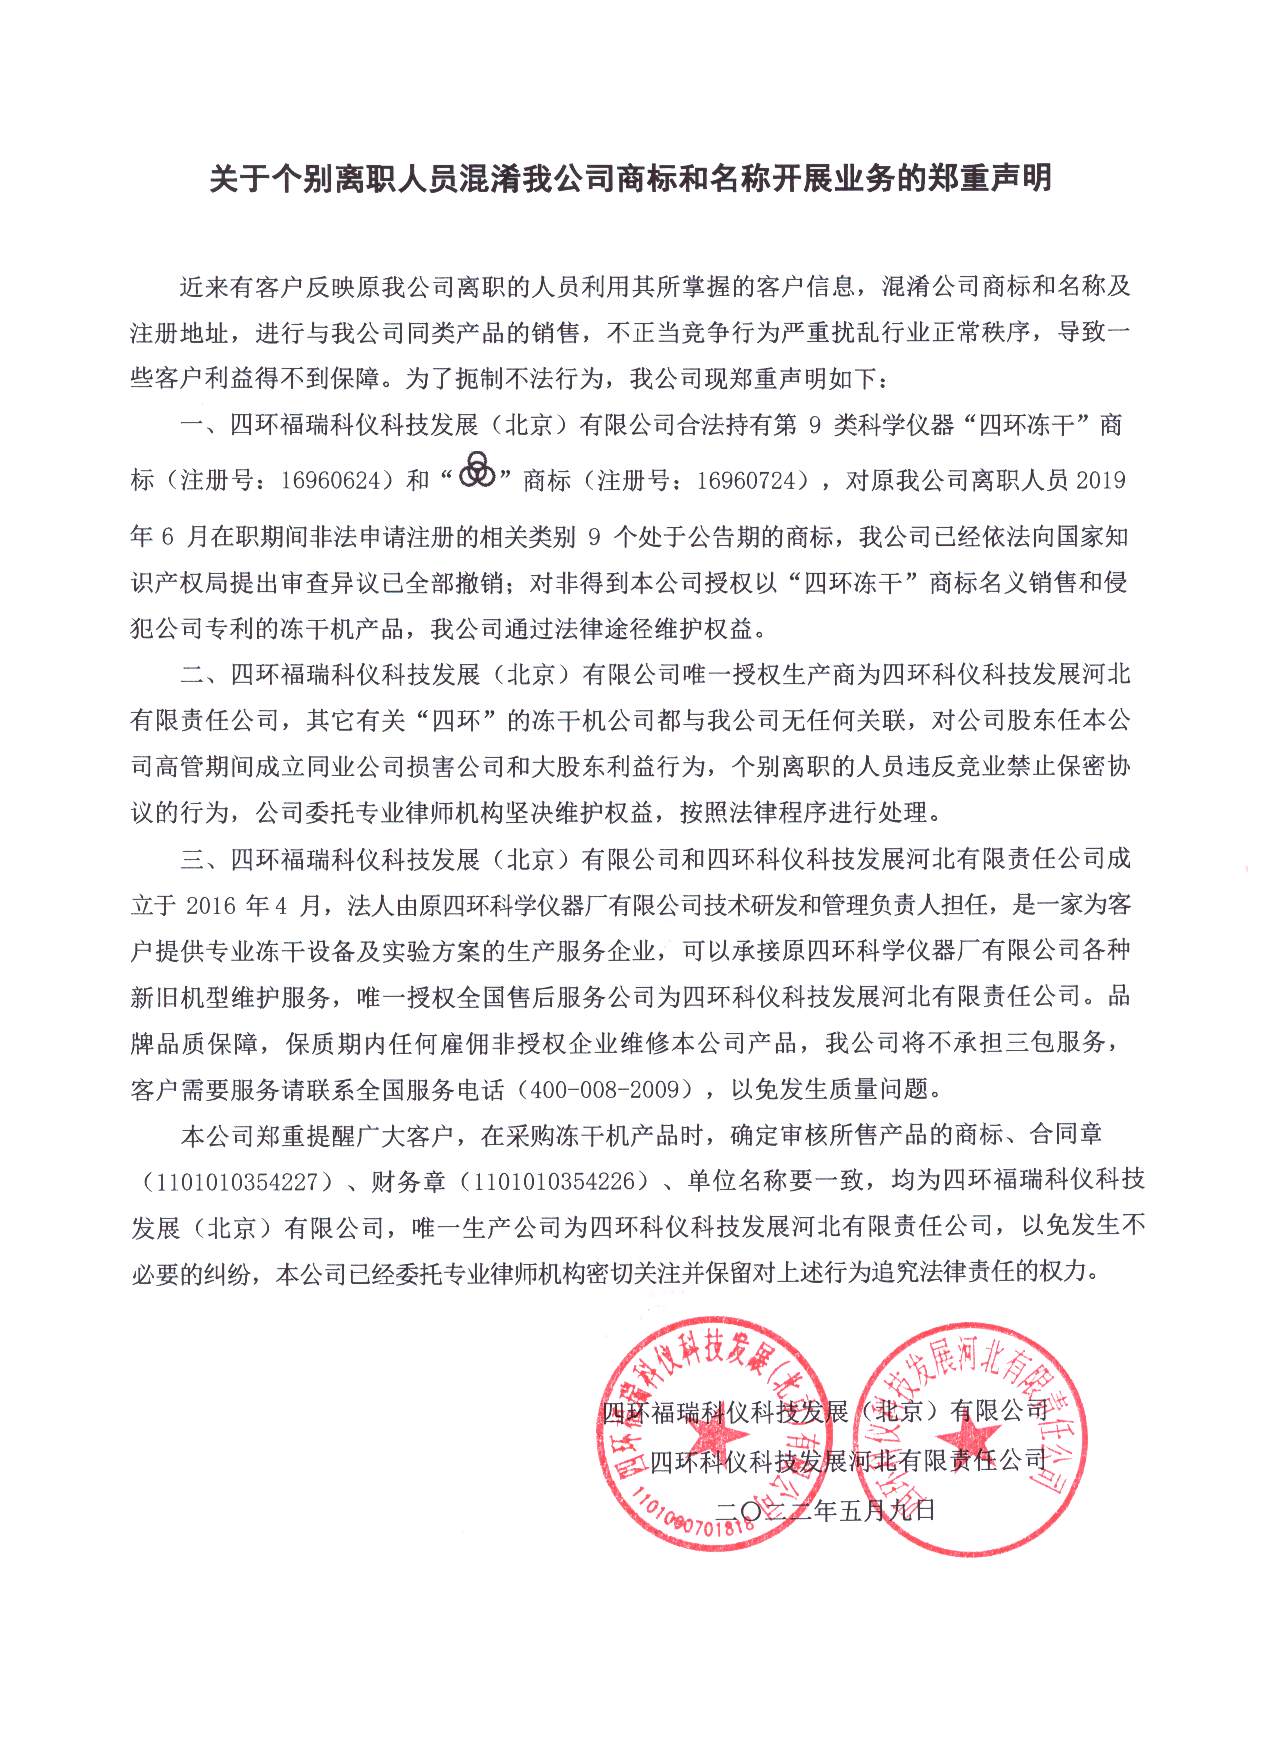 北京四環福瑞凍干機公司商標和名稱開展業務的鄭重聲明